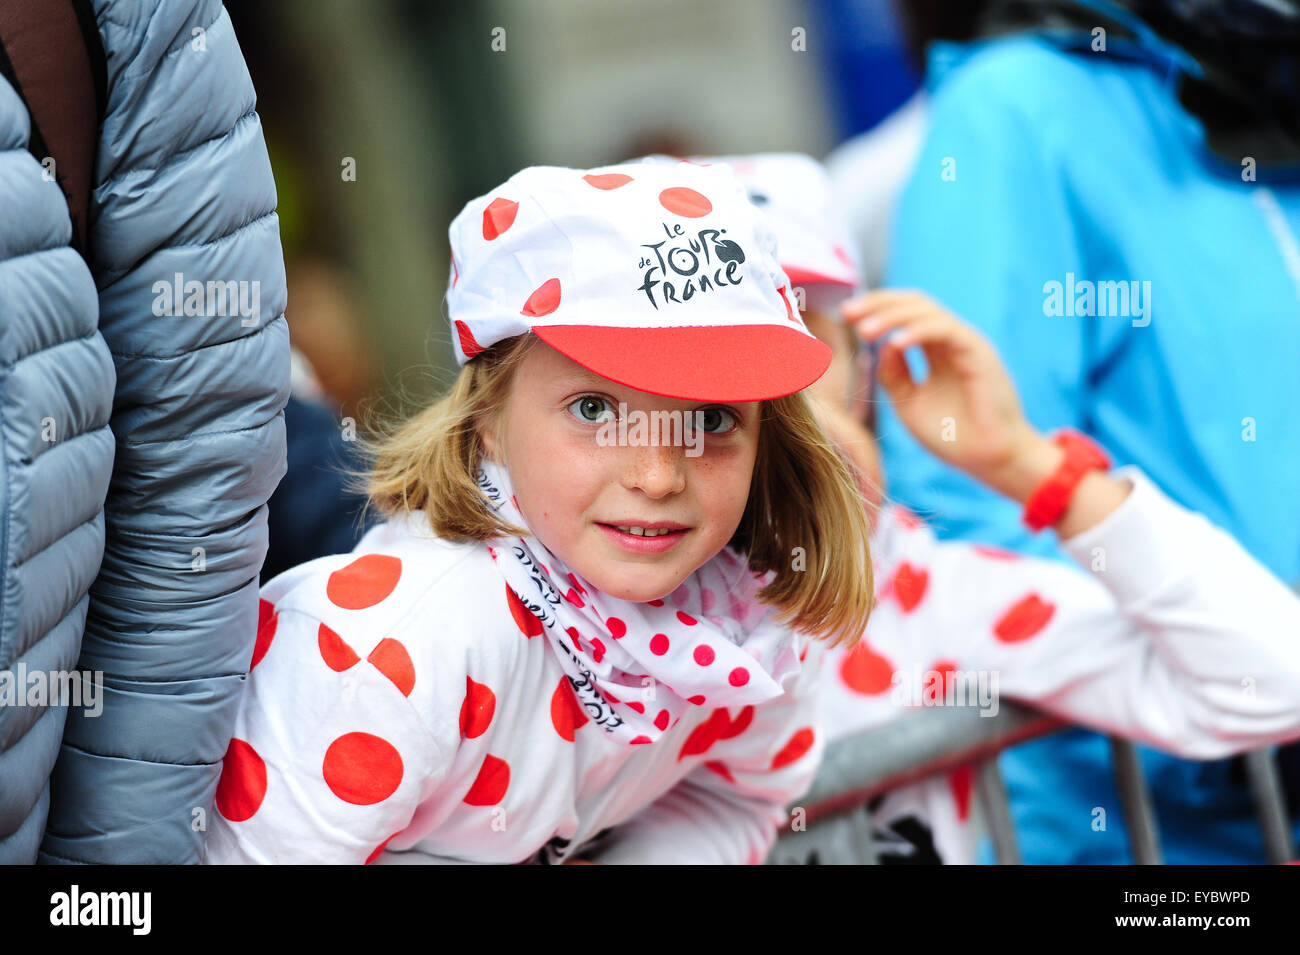 Parigi, Francia. Luglio 26, 2015. Giovani fan del ciclismo in una polka dot outfit durante la fase 21 del Tour de France sugli Champs Elysees di Parigi. Foto: Miroslav Dakov/ Alamy Live News Foto Stock